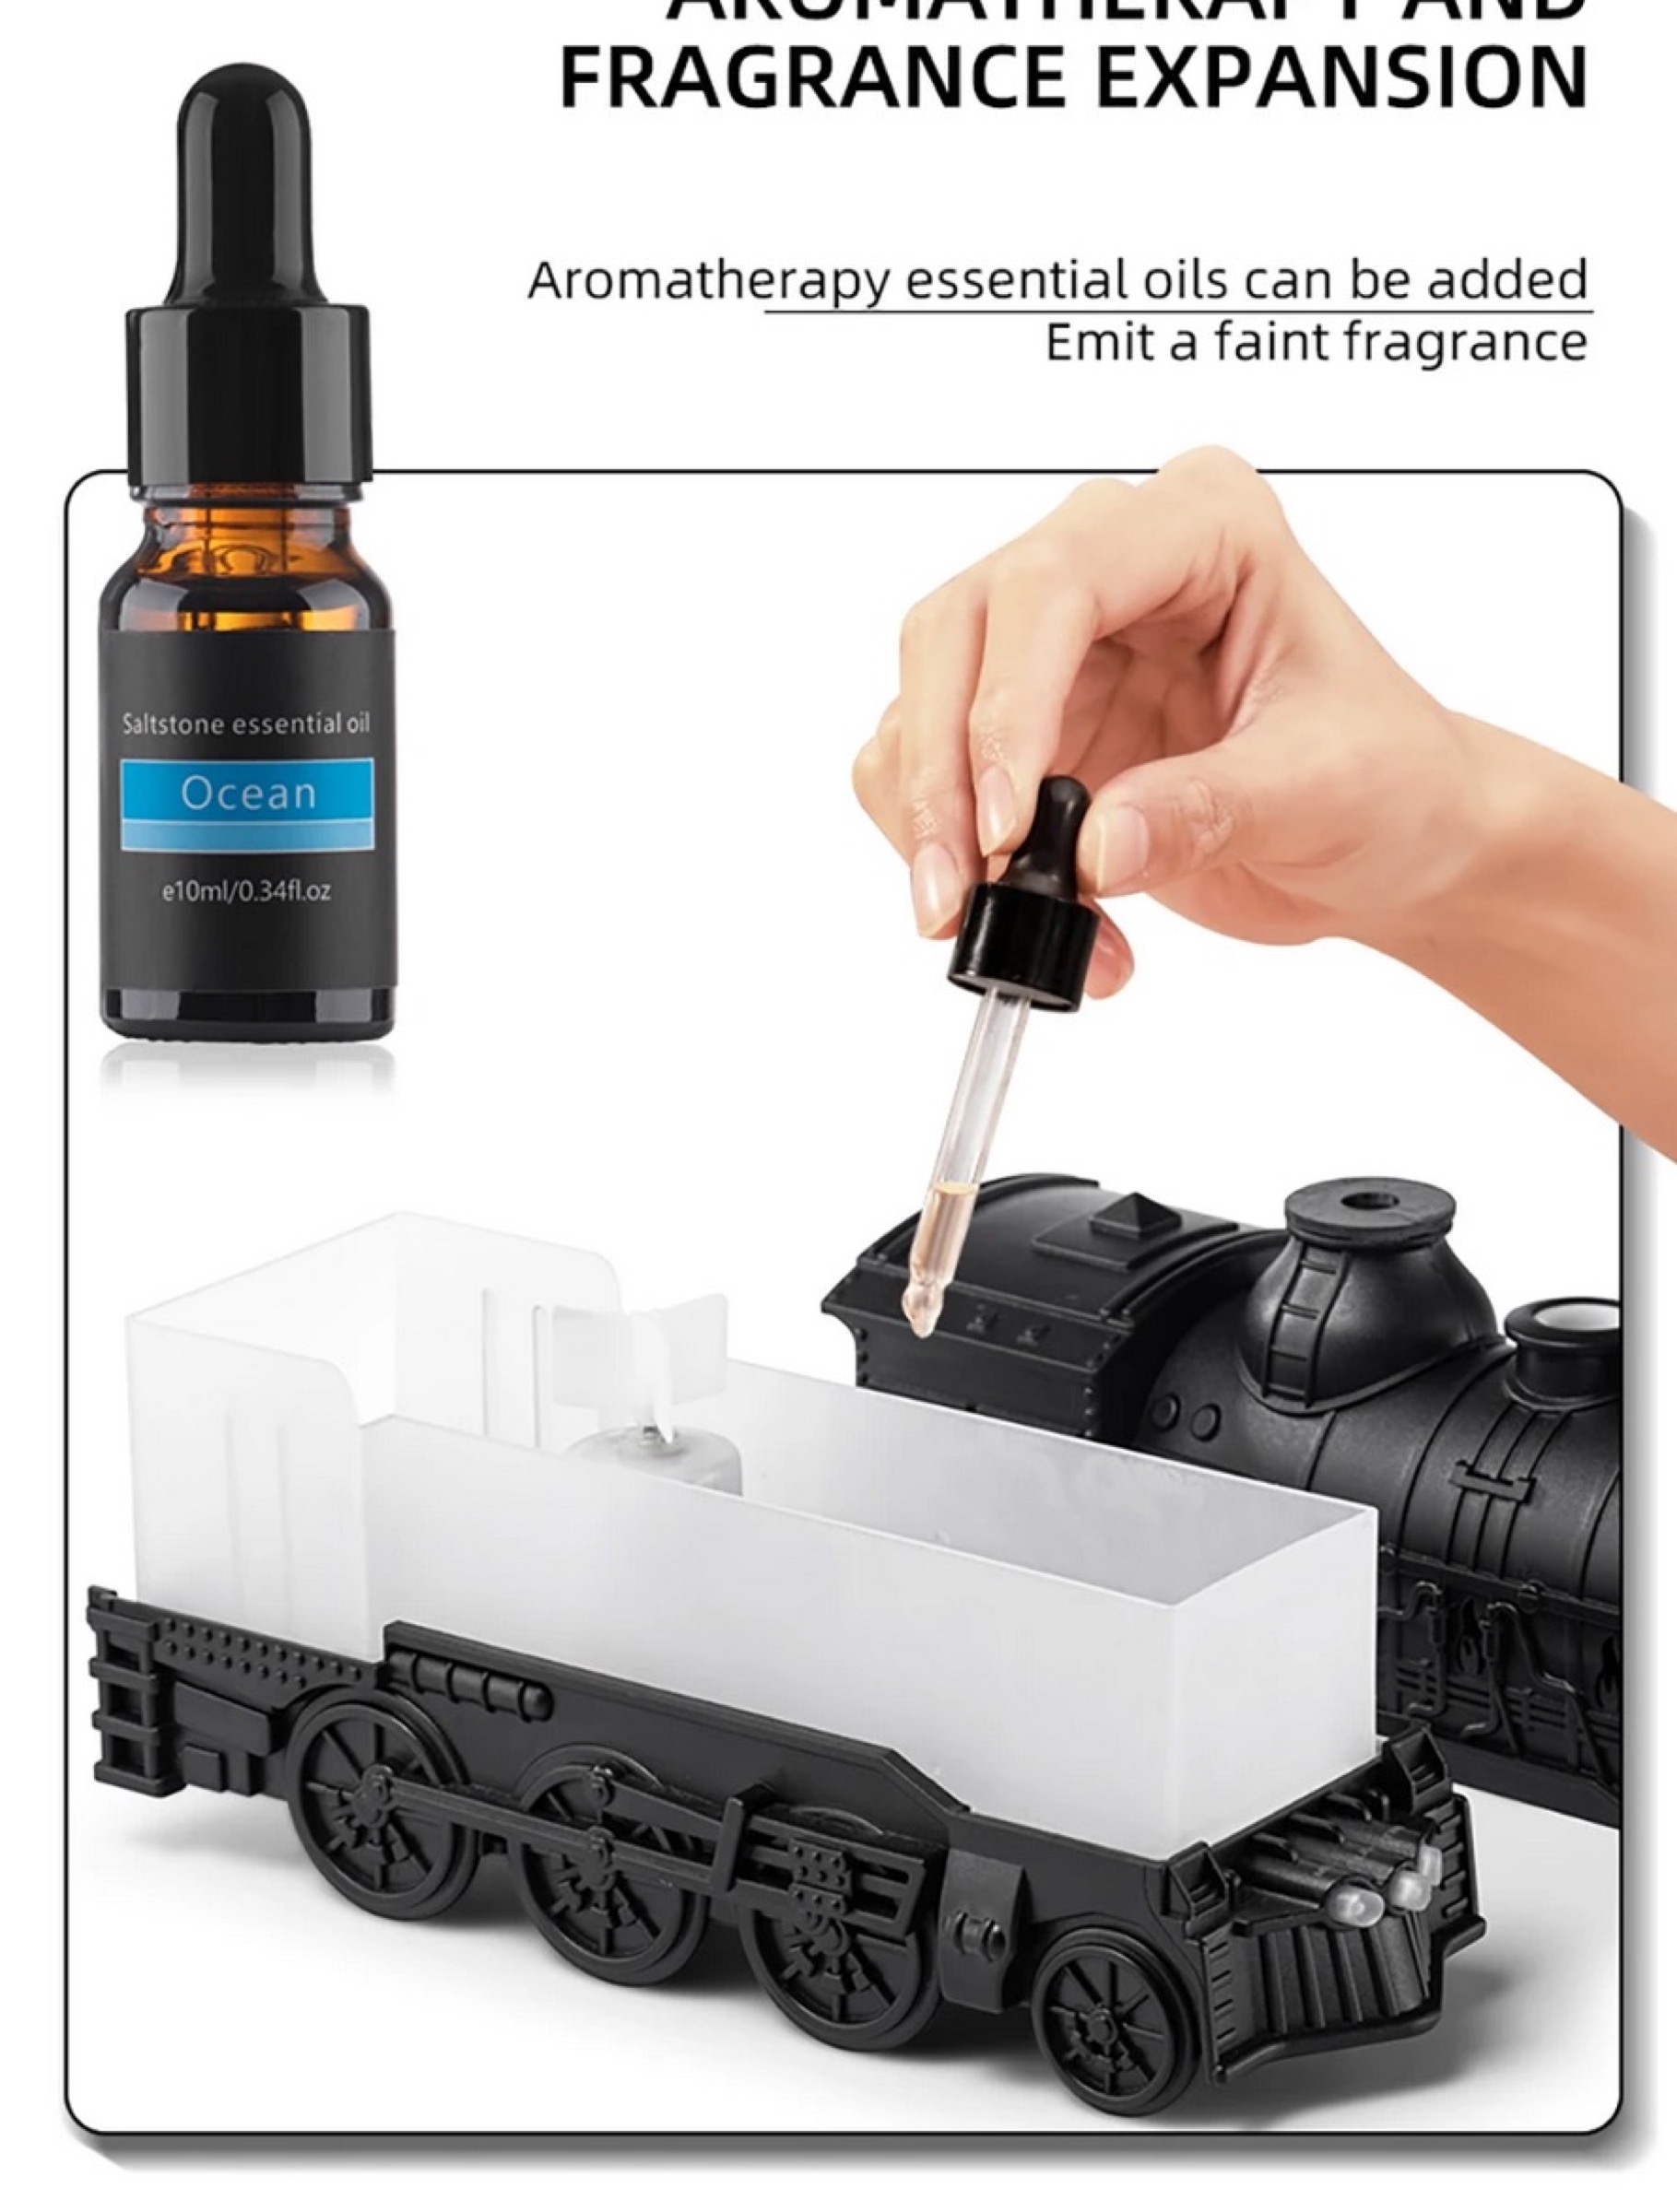 Umidificatore e diffusore di aromi a forma di trenino, solo 24 €